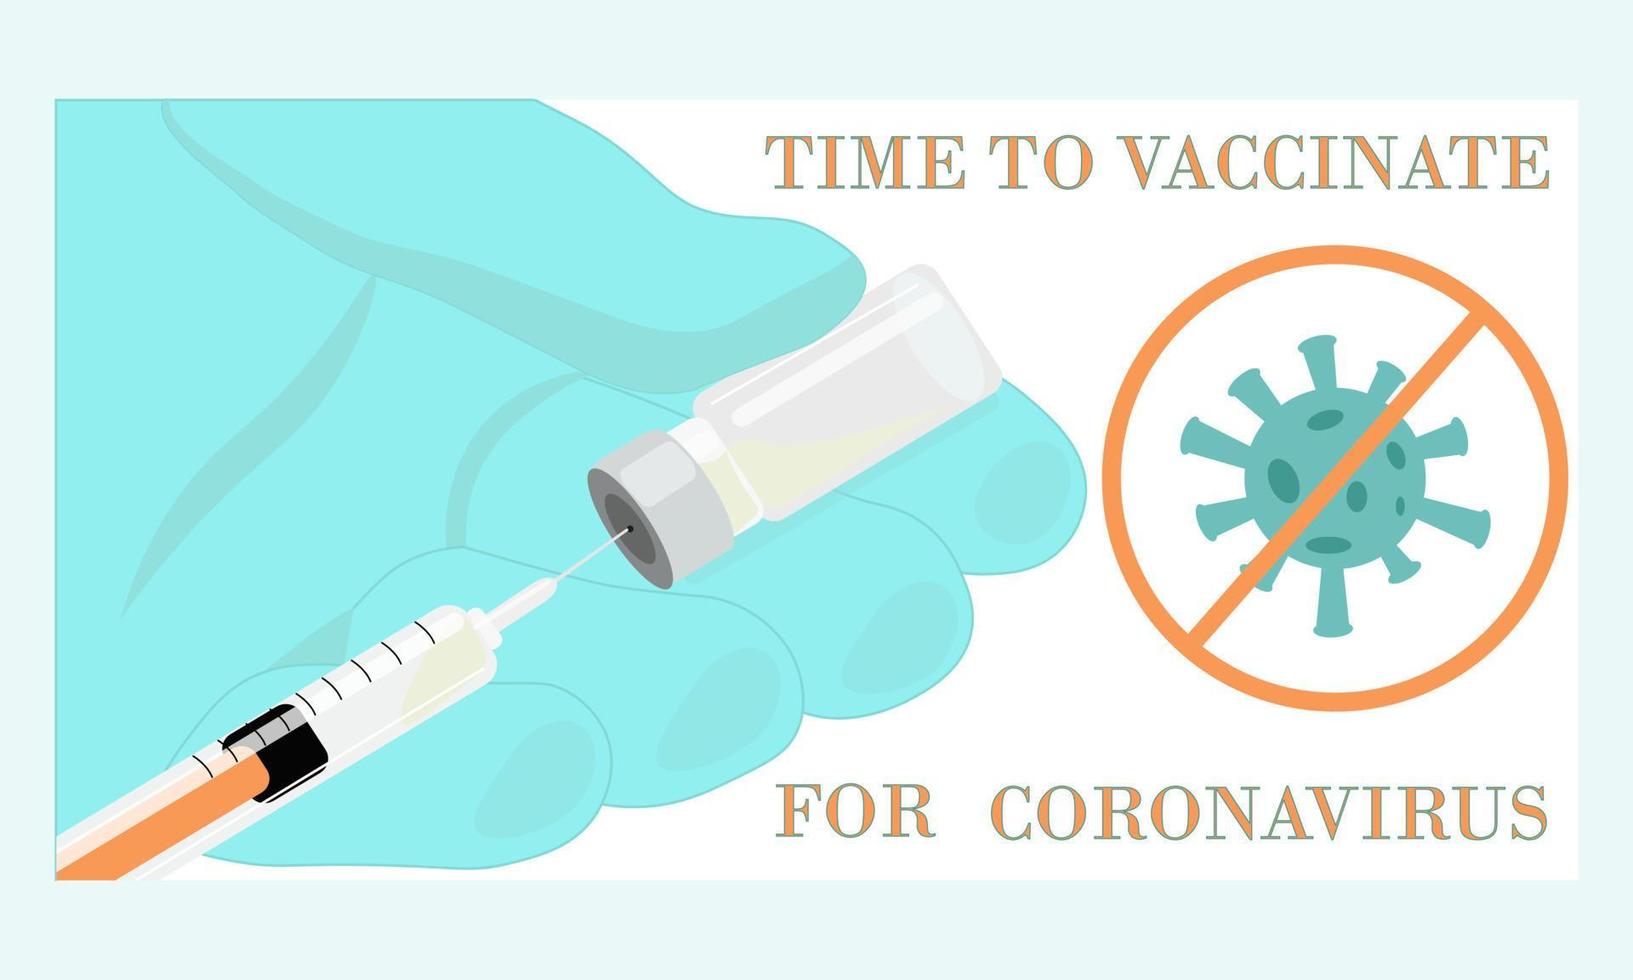 doktershand in medische handschoen met fles vaccin en spuit. inschrijvingstijd om te vaccineren voor coronavirus. concept van vaccins voor de preventie covid-19 coronavirus vector